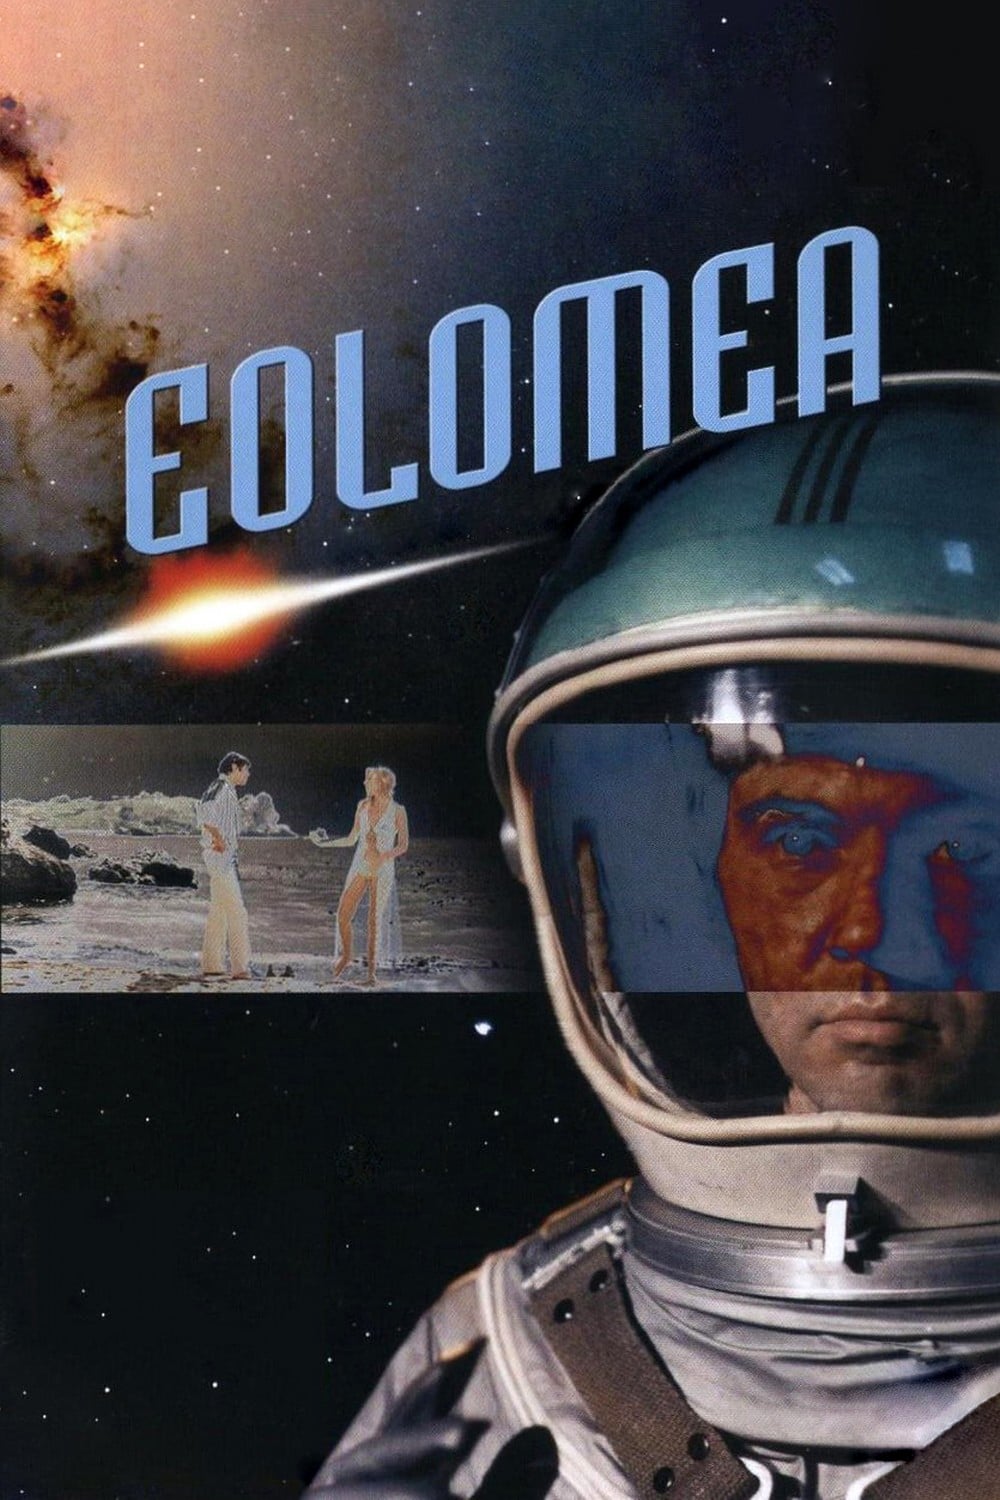 Eolomea (1972)